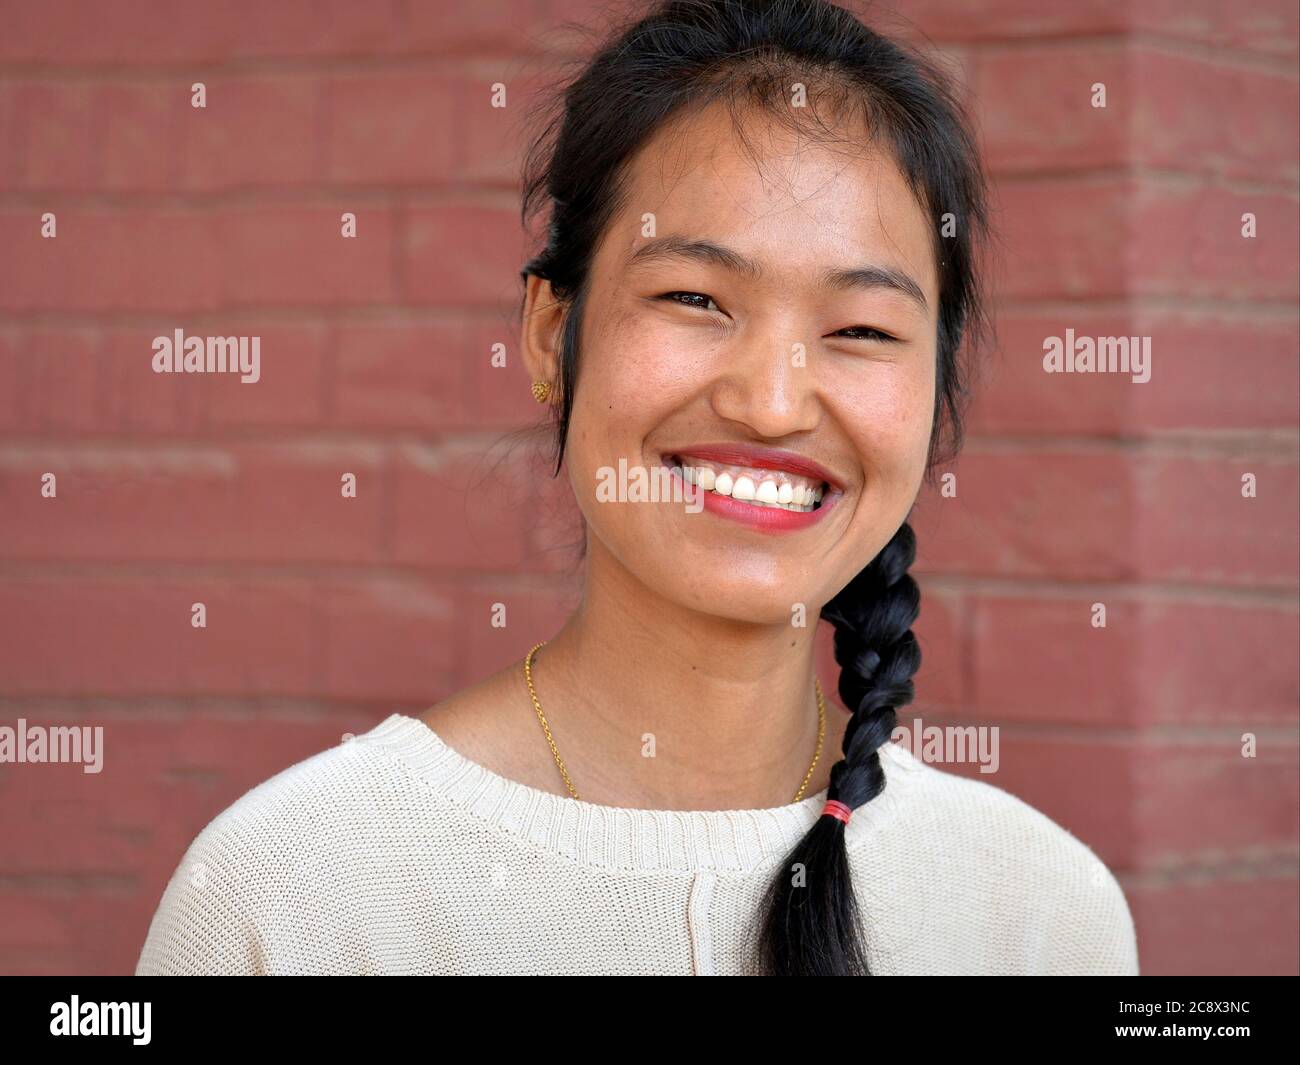 Une jeune femme birmane à la tresse sourit pour la caméra. Banque D'Images